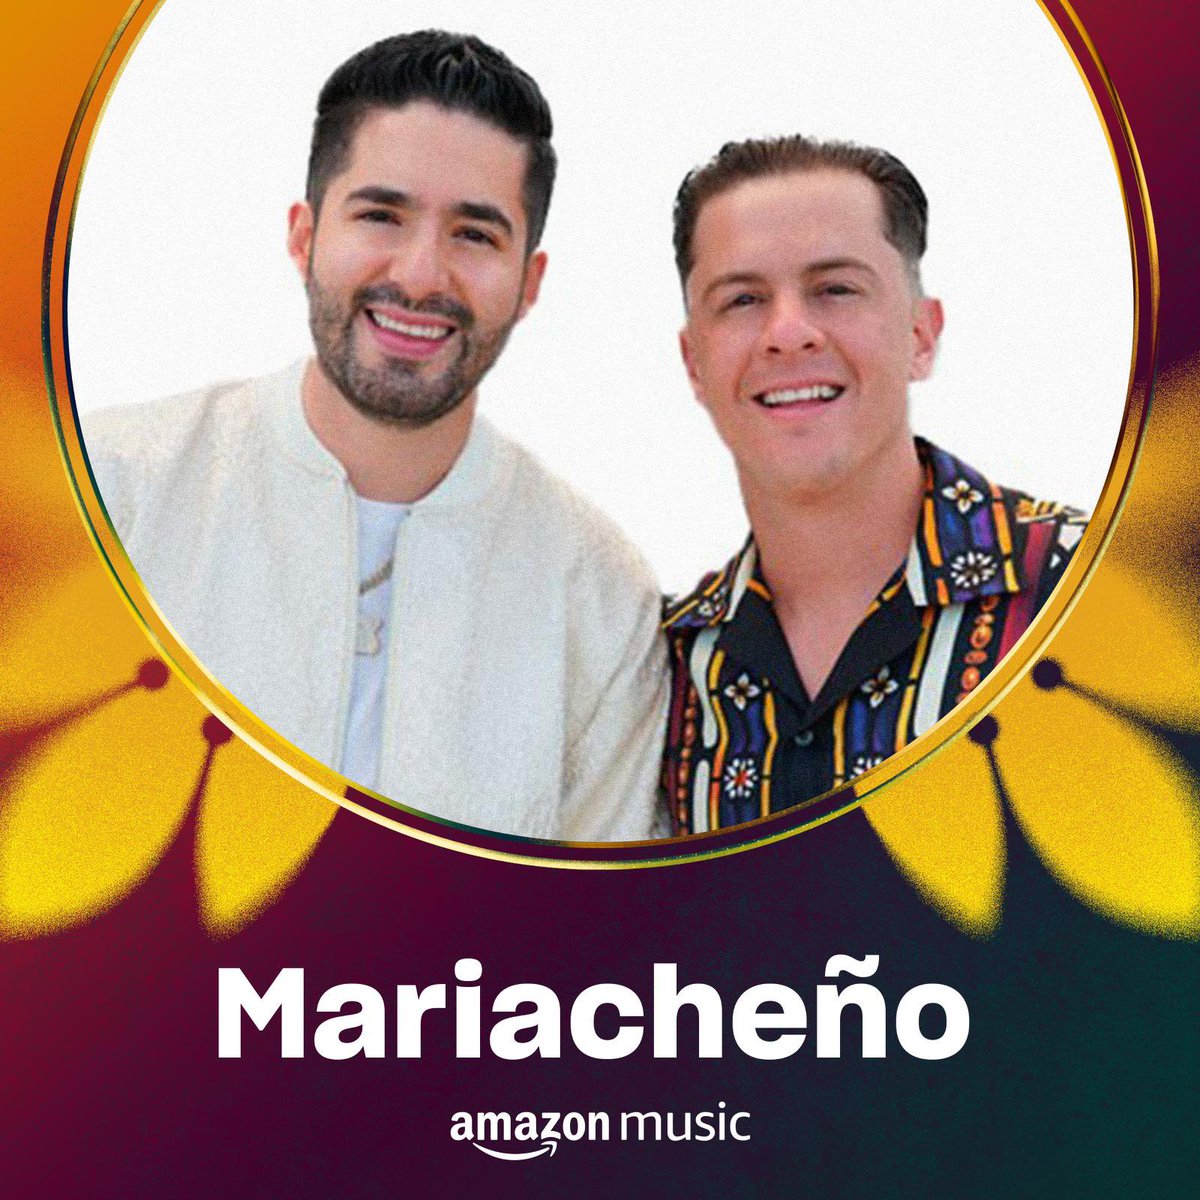 ¡¡Empezamos la semana con todo familia!! 🔥 Hoy somos portada en la playlist “Mariacheño” de Amazon music. Vayan a escuchar y darle apoyo a #OjaláLluevaTequila y que siga sonando por todas partes 💃🏻
music.amazon.com/playlists/B0B1…